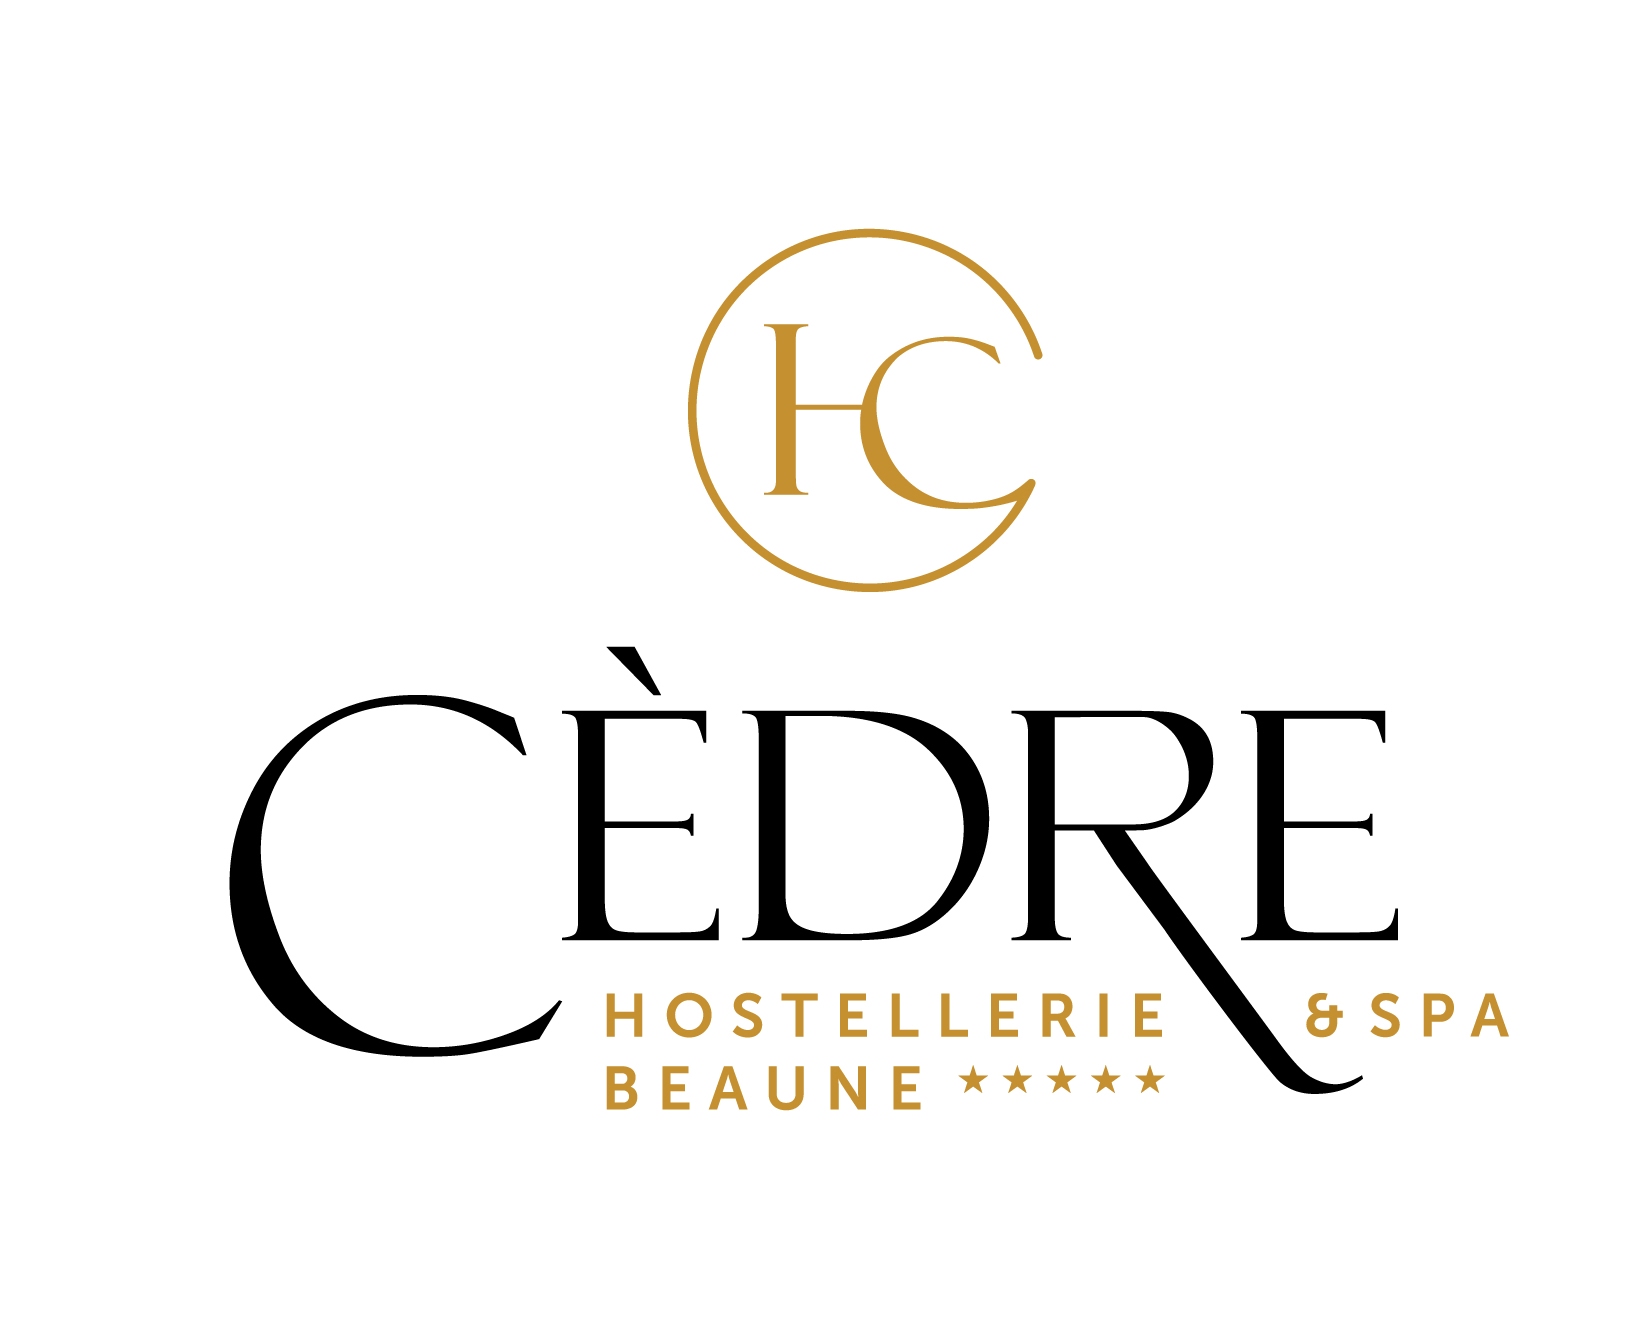 Cèdre_logo Hostellerie & Spa CMJN